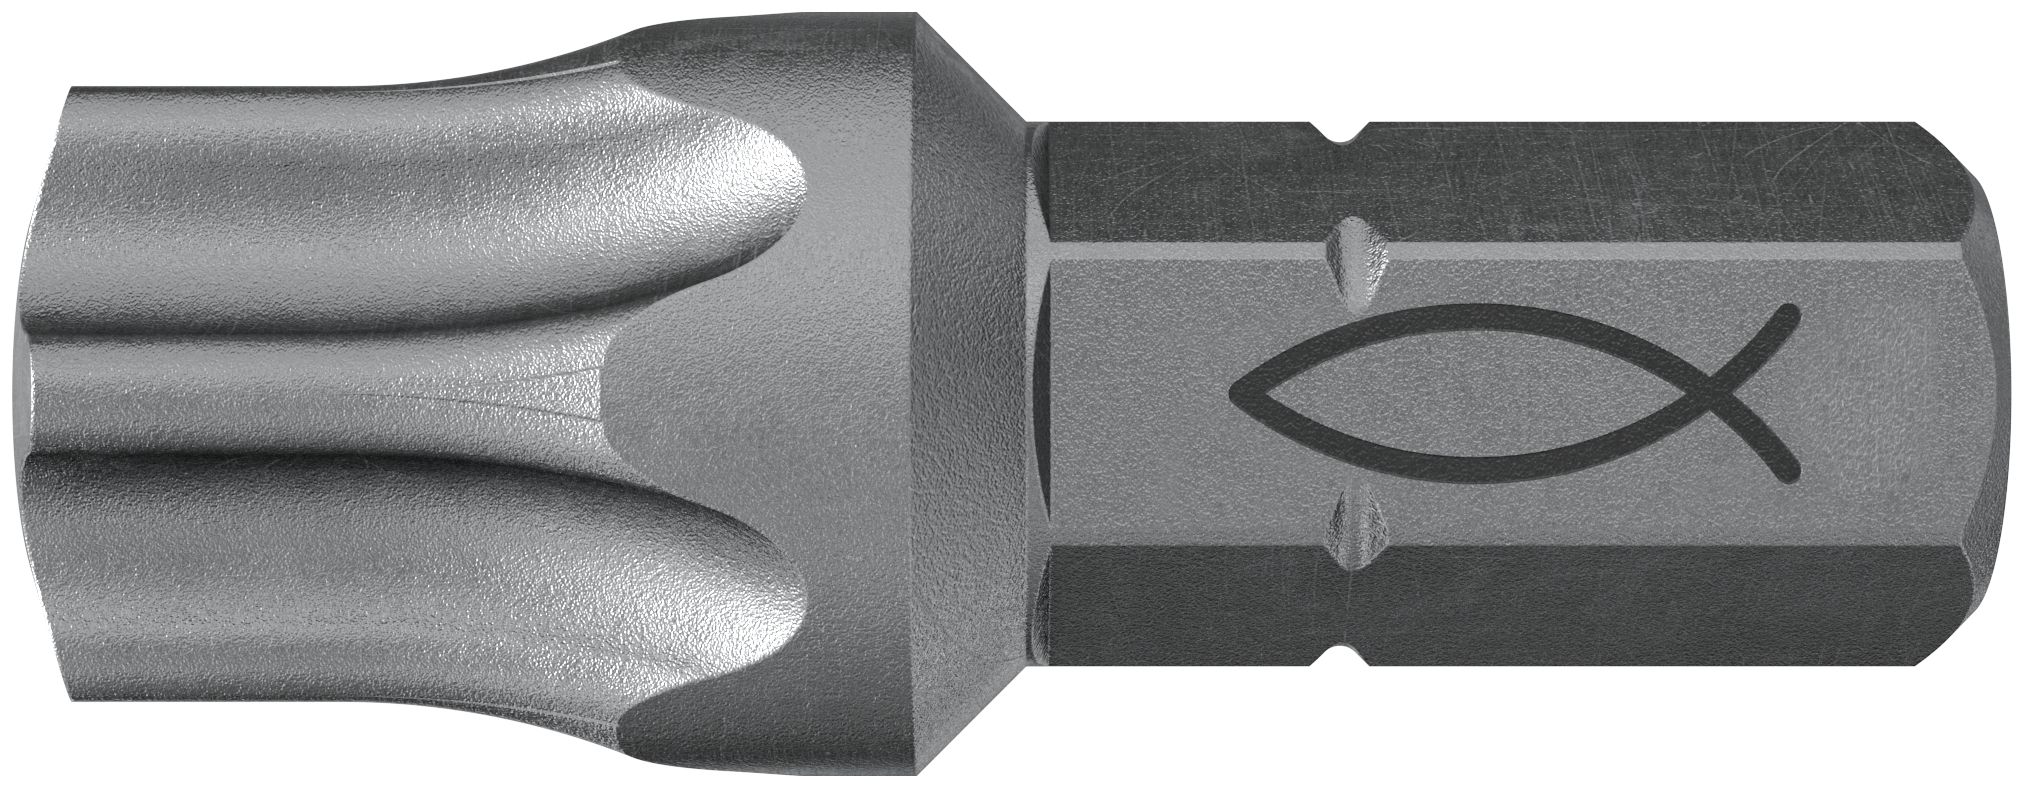 fischer Inserto per avvitatore FPB T 50 PROFI Bit W 10 (1 Pz.) L'inserto per trapano e avvitatore, in acciaio di alta qualit con elevata resistenza all?abrasione per uso professionale.